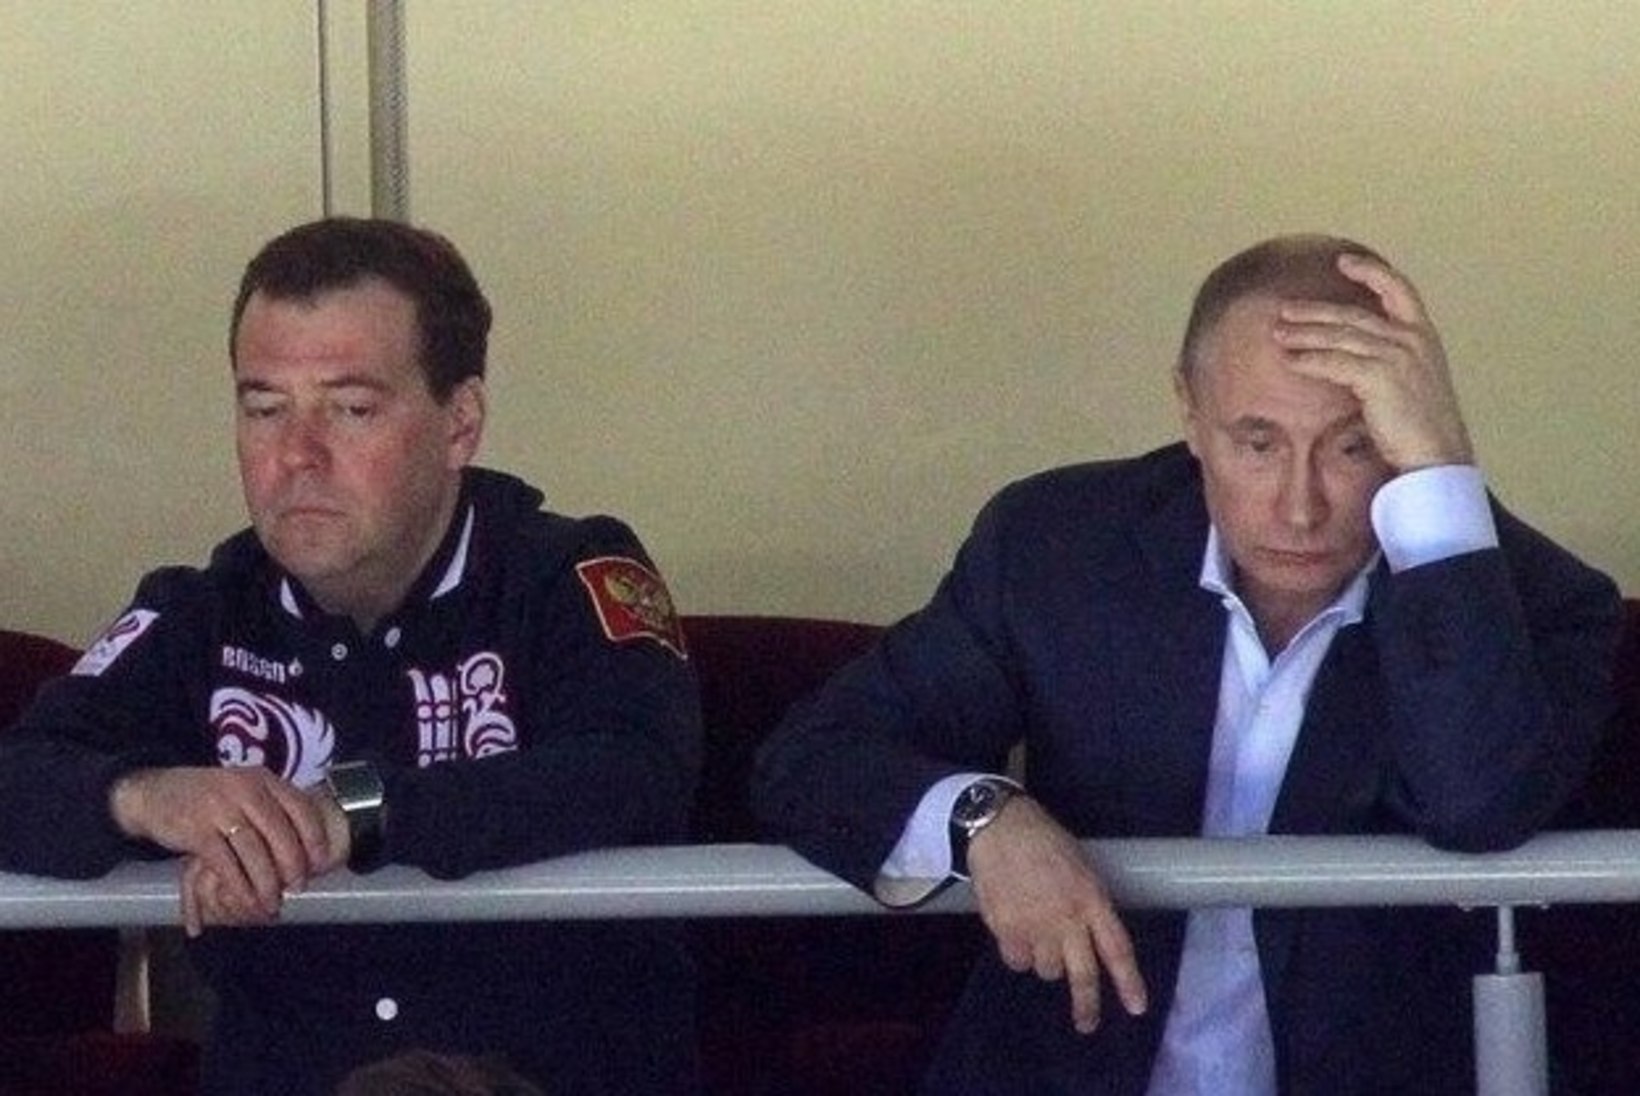 Pilt ütleb rohkem kui tuhat sõna: Putin ja Medvedev hokimatšil